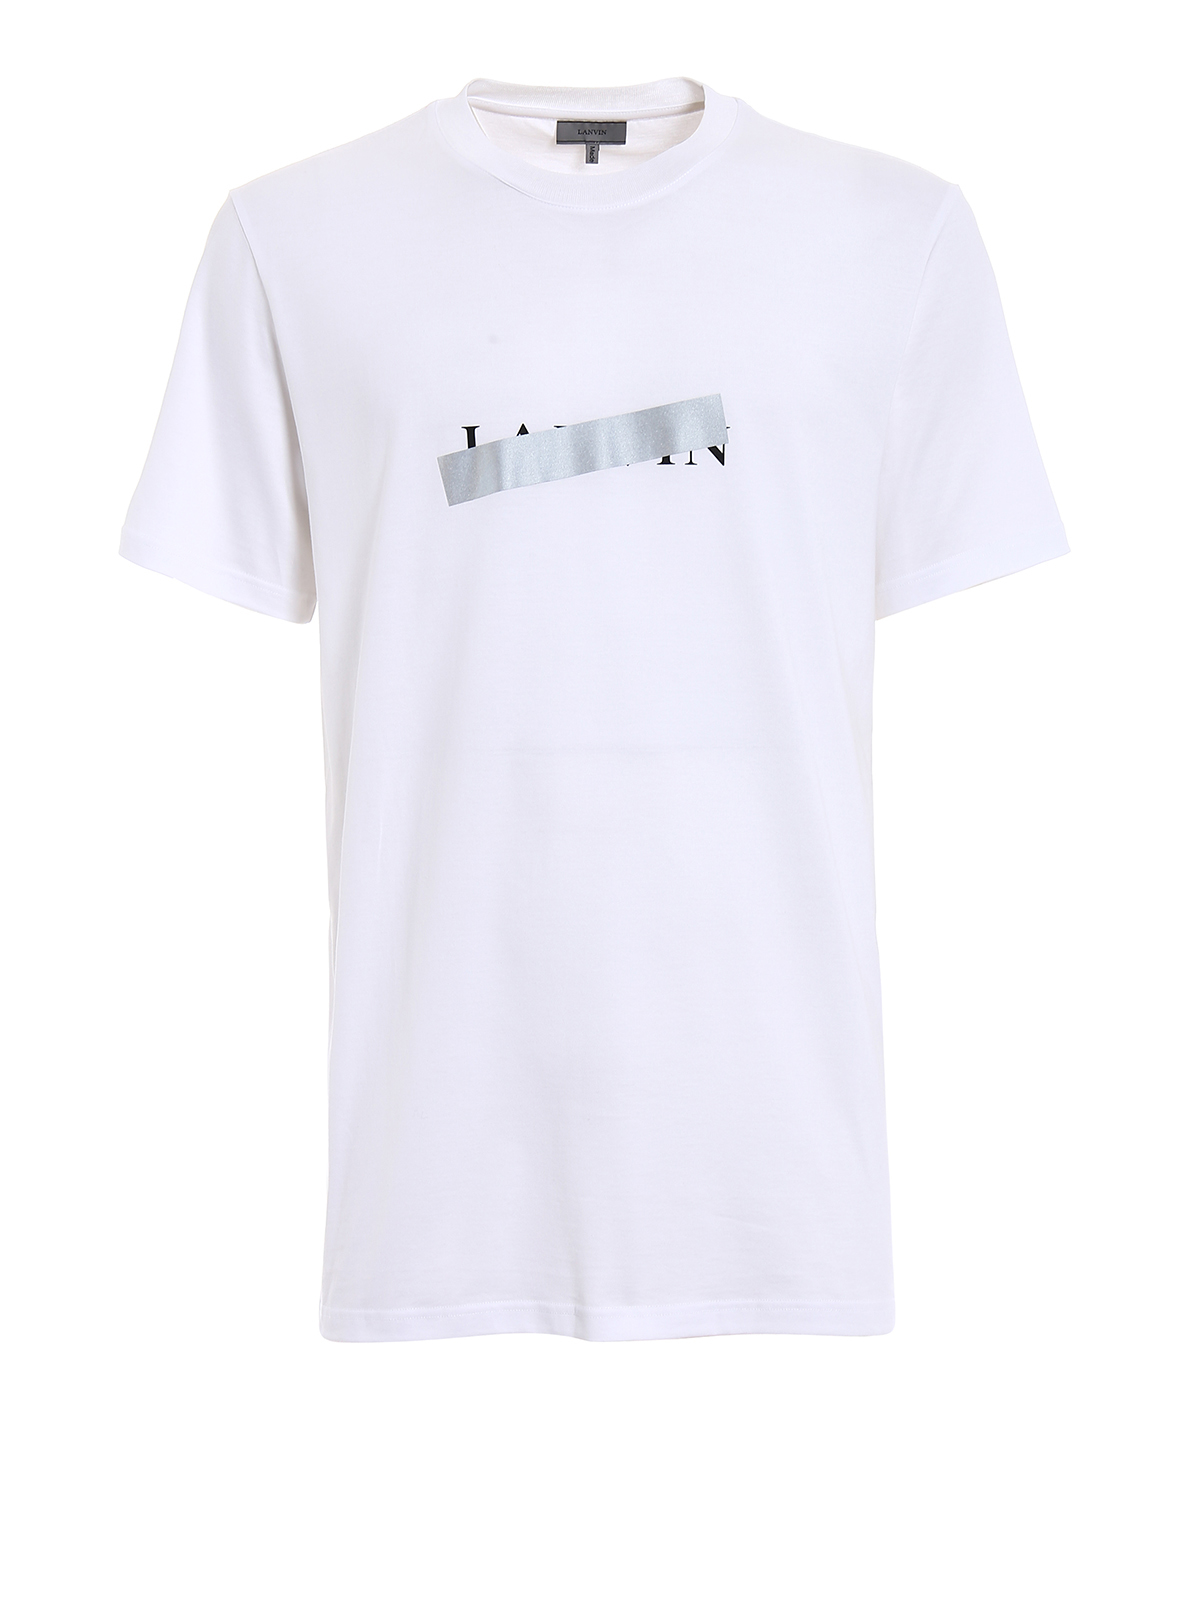 T-shirts Lanvin - Lanvin logo white T-shirt - RMJE0034P1800 | iKRIX.com